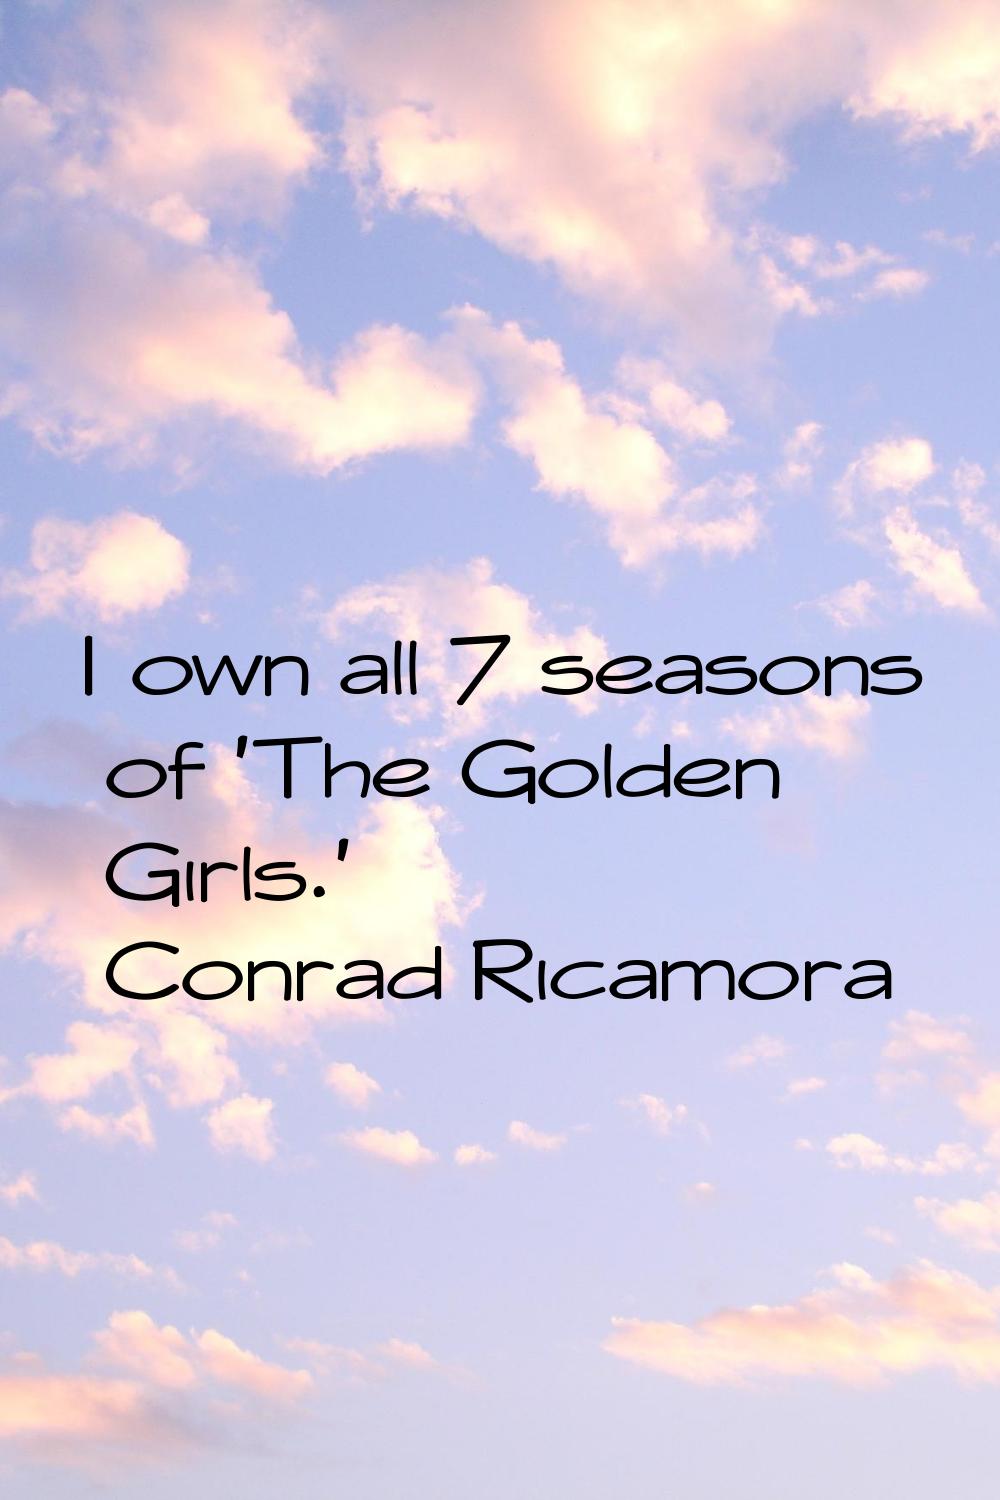 I own all 7 seasons of 'The Golden Girls.'